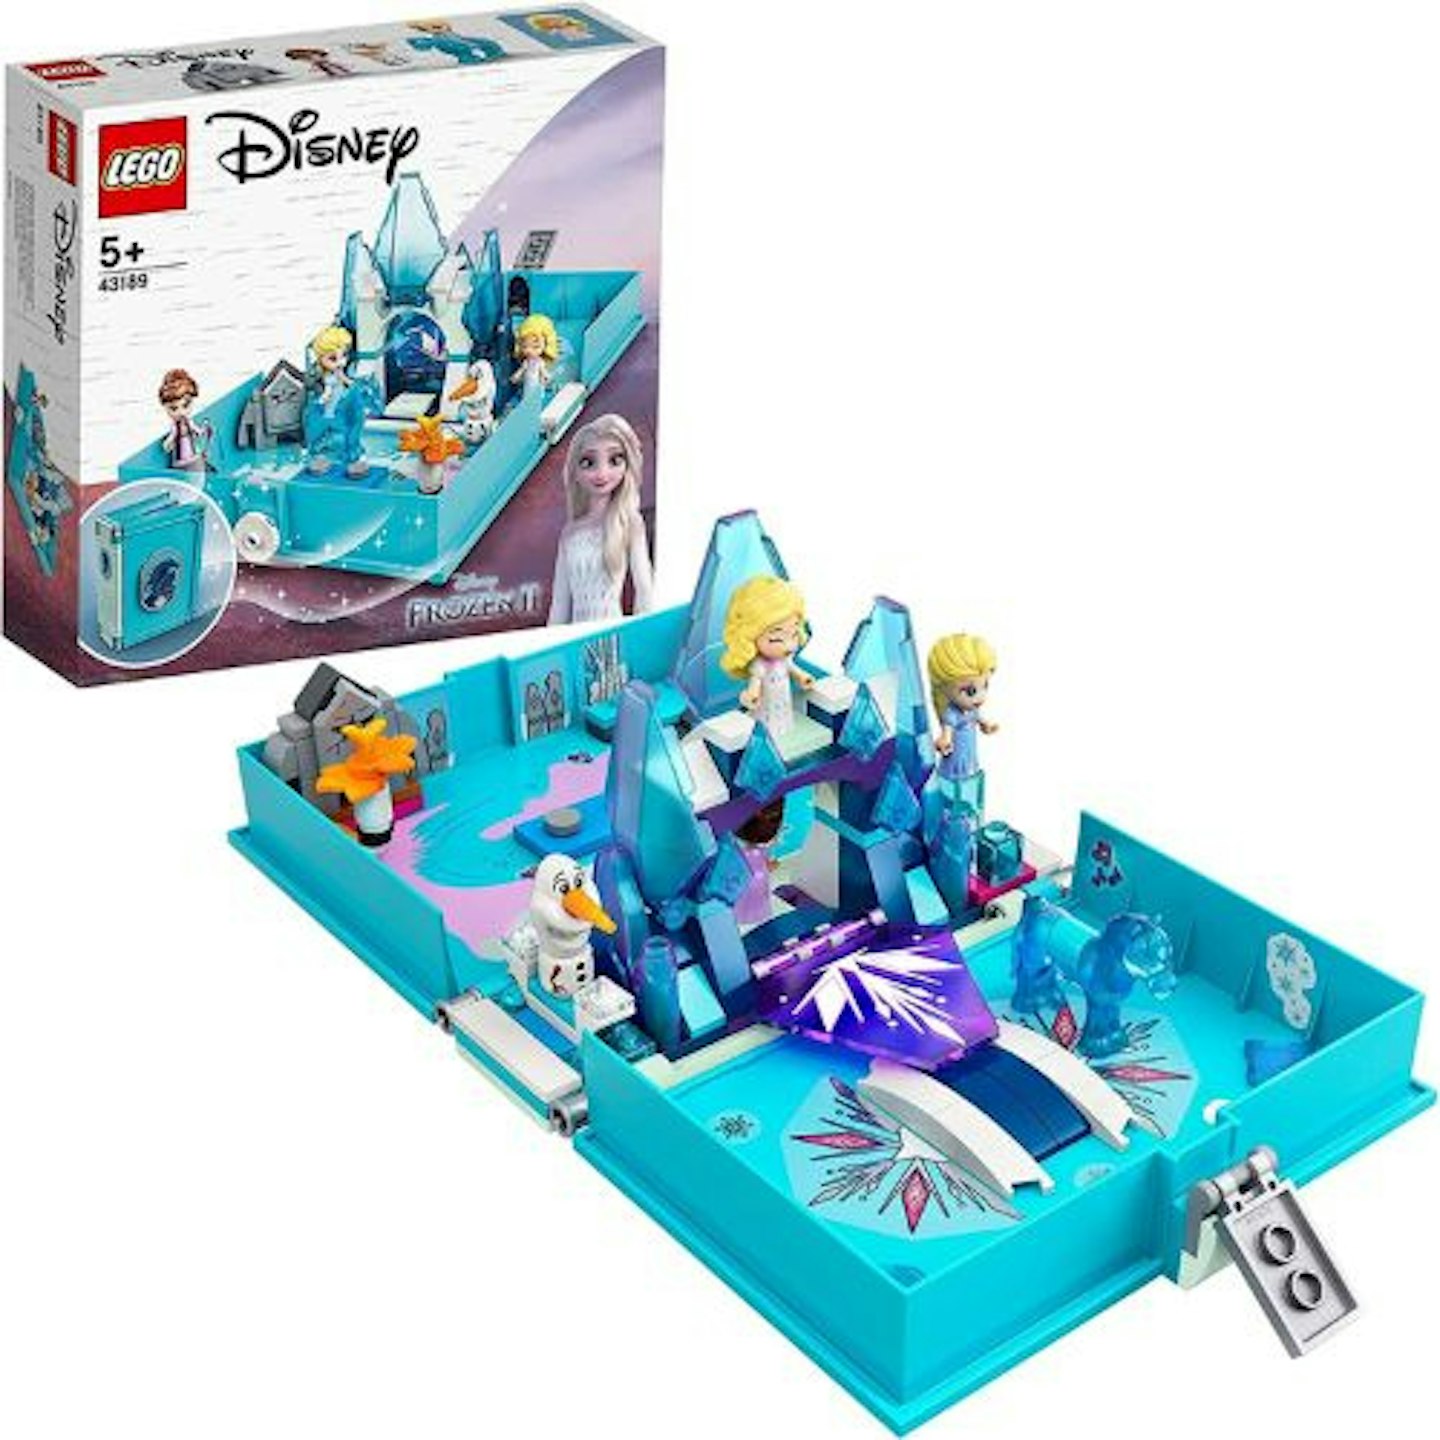 LEGO-Disney-Frozen-2-Elsa